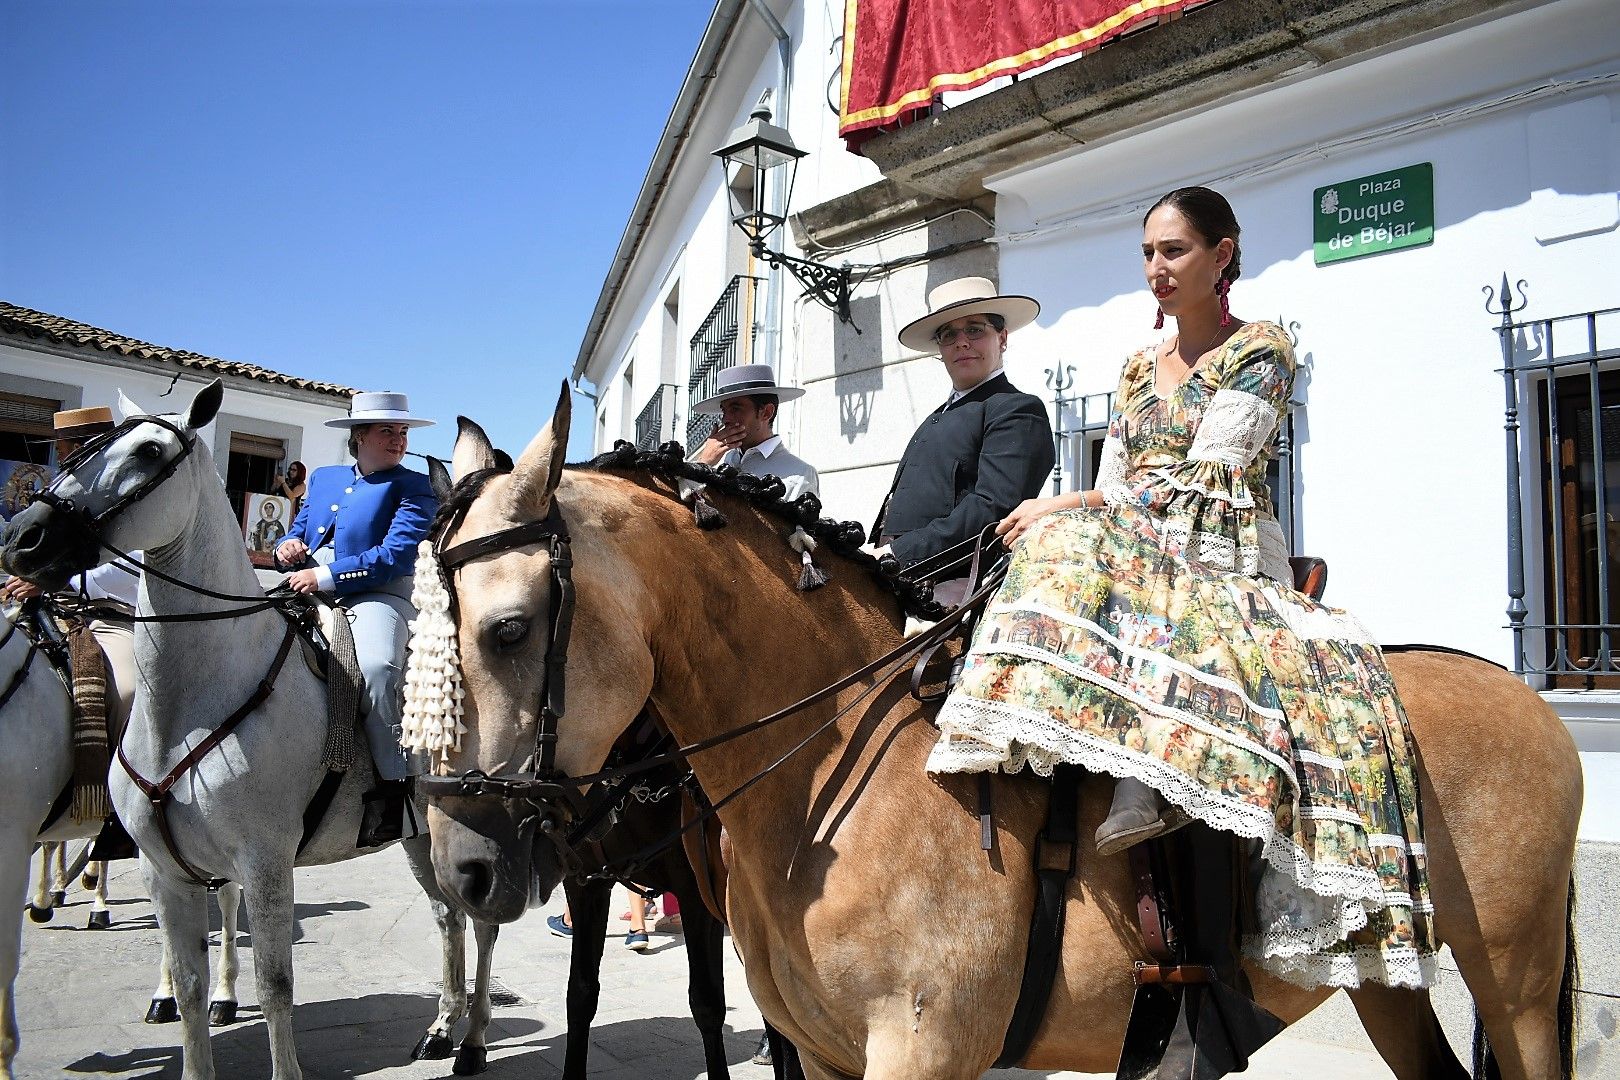 Con la reinauguración del Ayuntamiento de Villanueva del Duque, arranca la feria de la localidad